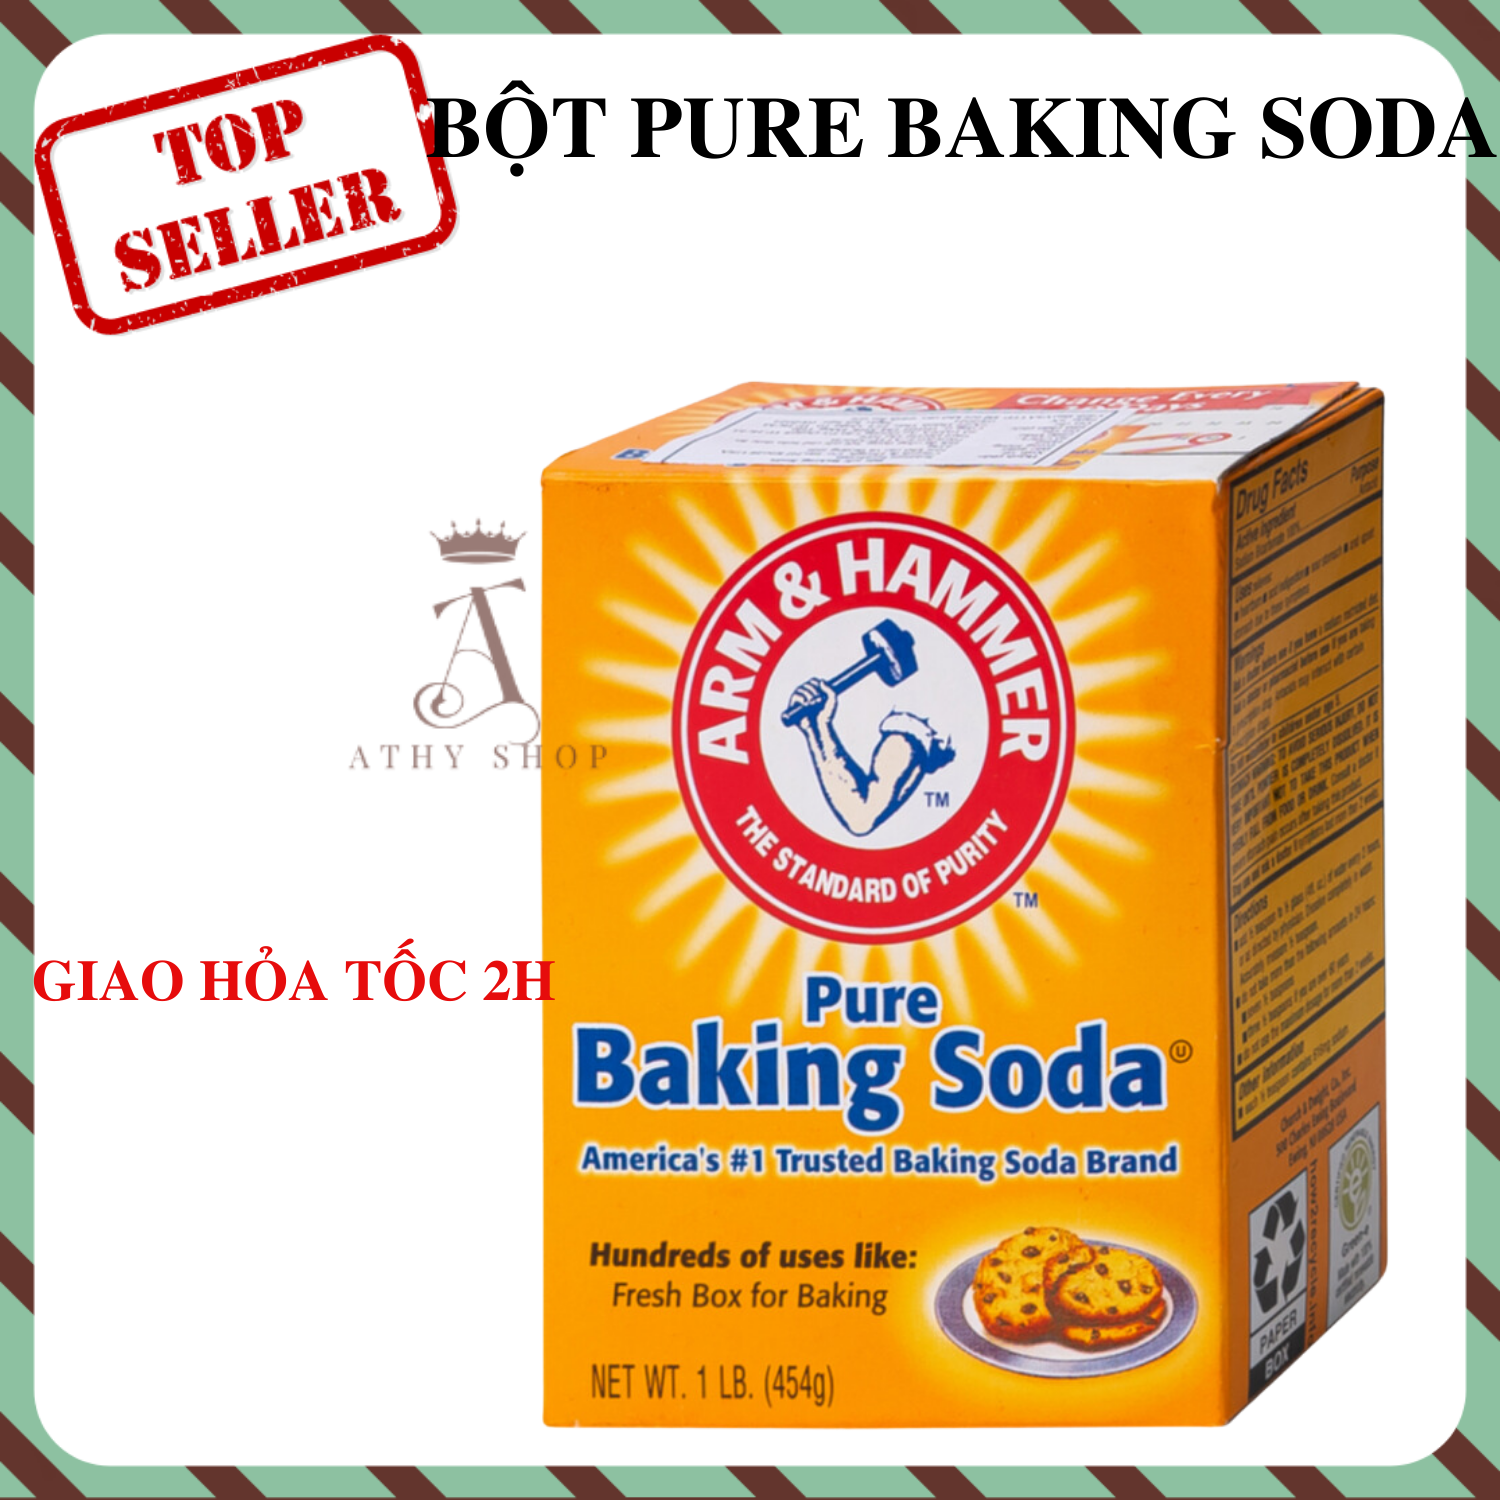 BỘT PURE BAKING SODA bột sô đa nhiều công dụng như khử mùi gội đầu tẩy